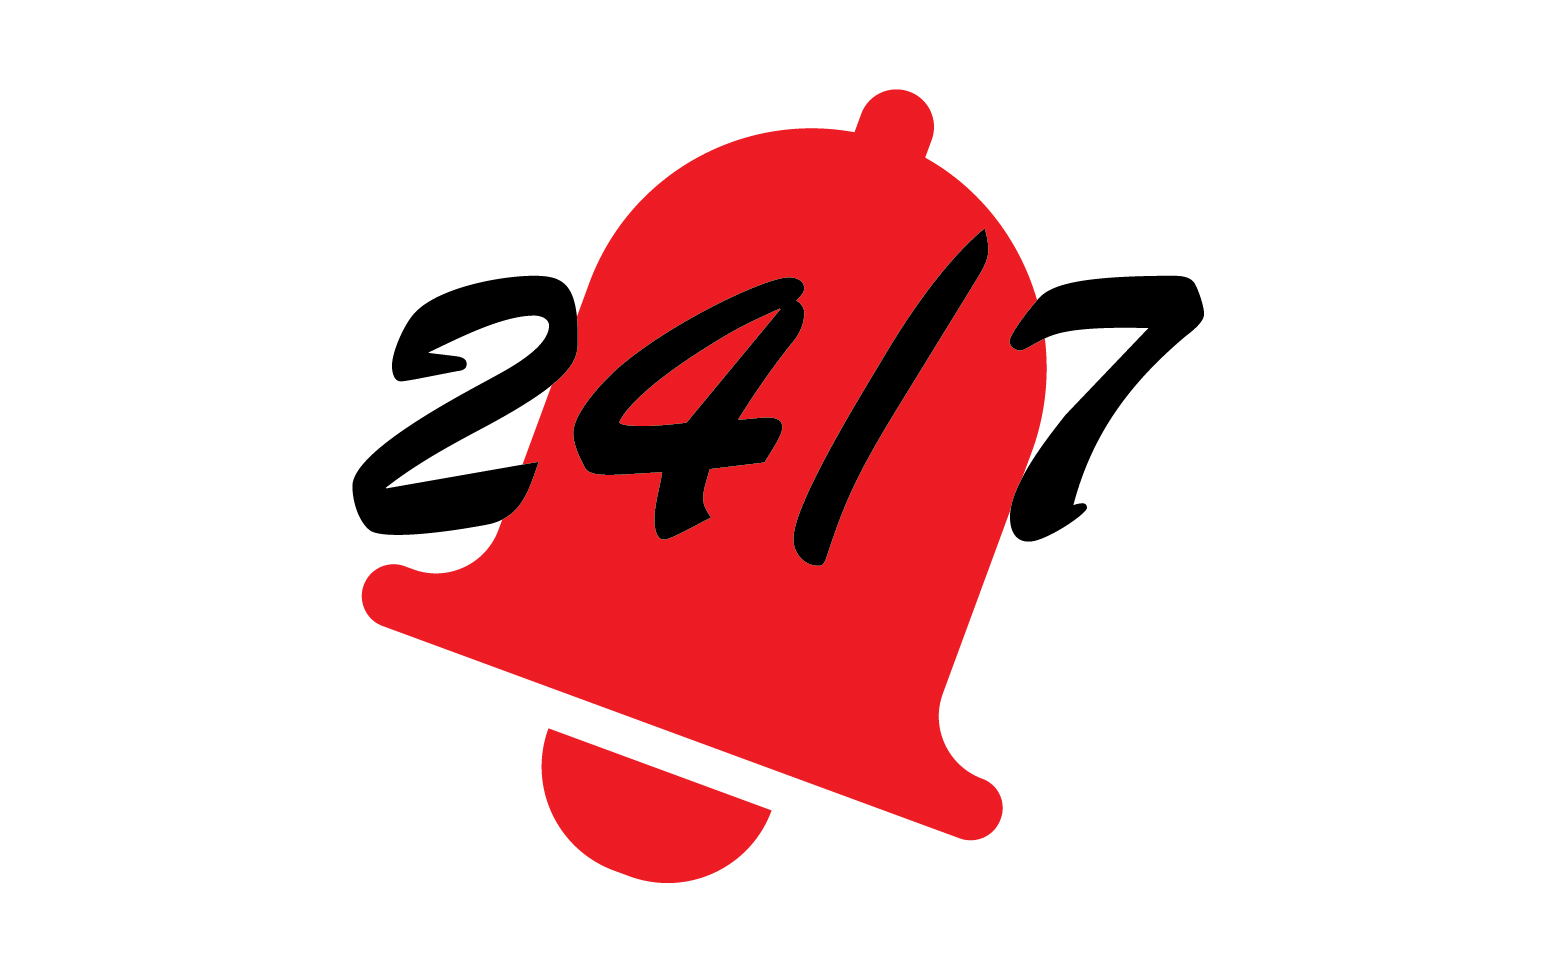 24 hour time icon logo design v136